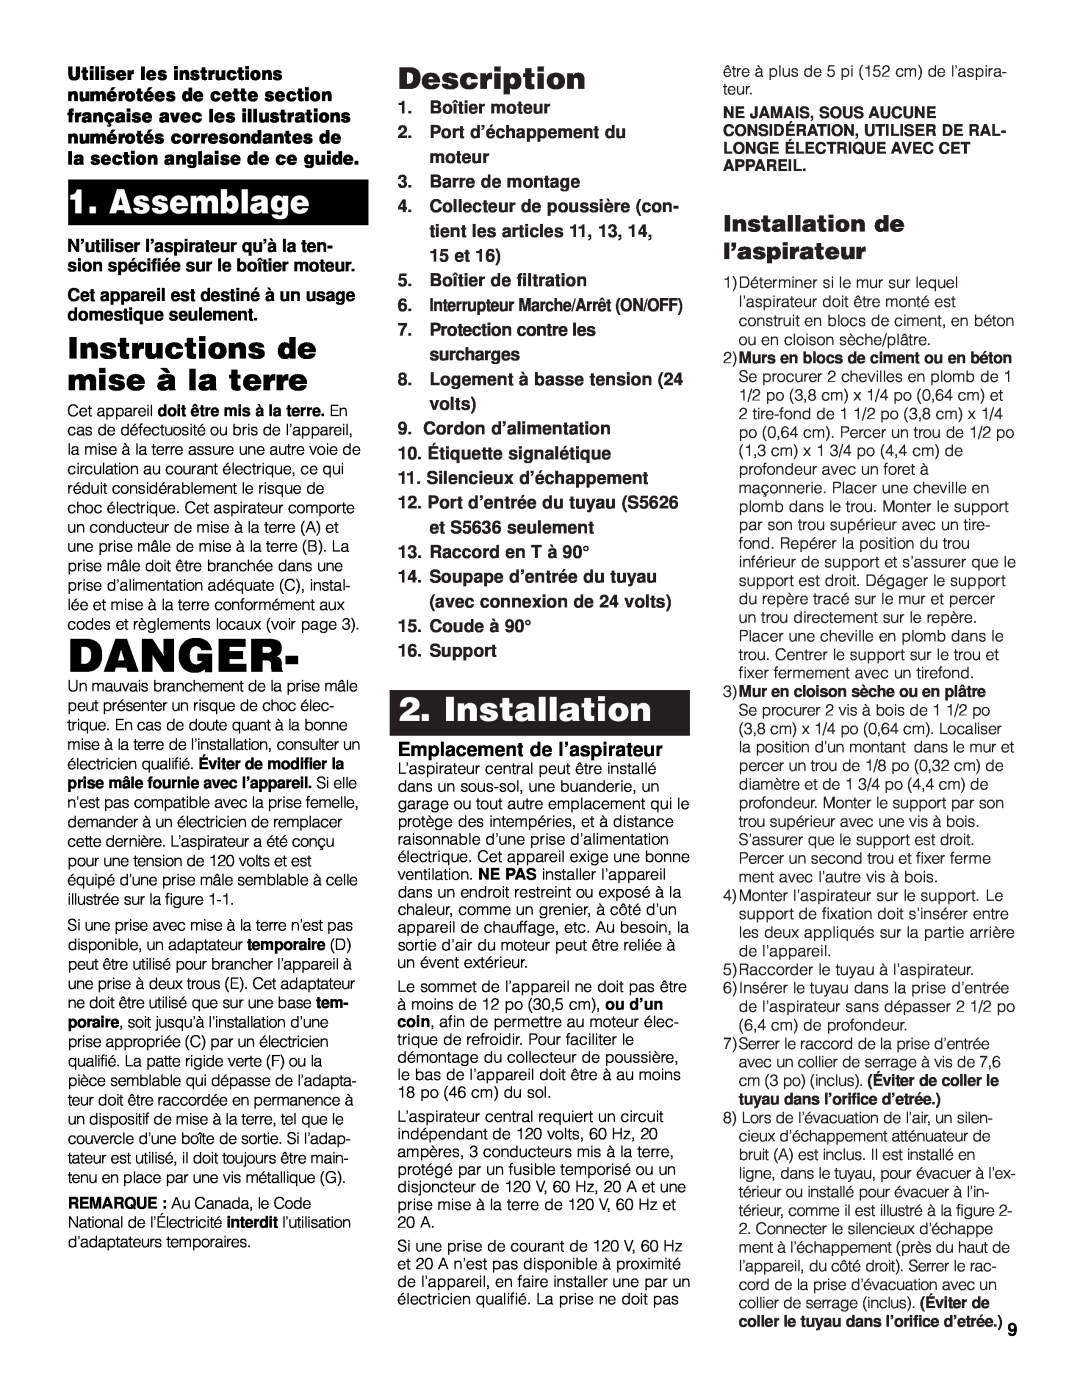 Hoover 120 V 60 HZ owner manual Danger, Installation de l’aspirateur, Emplacement de l’aspirateur, Assemblage, Description 